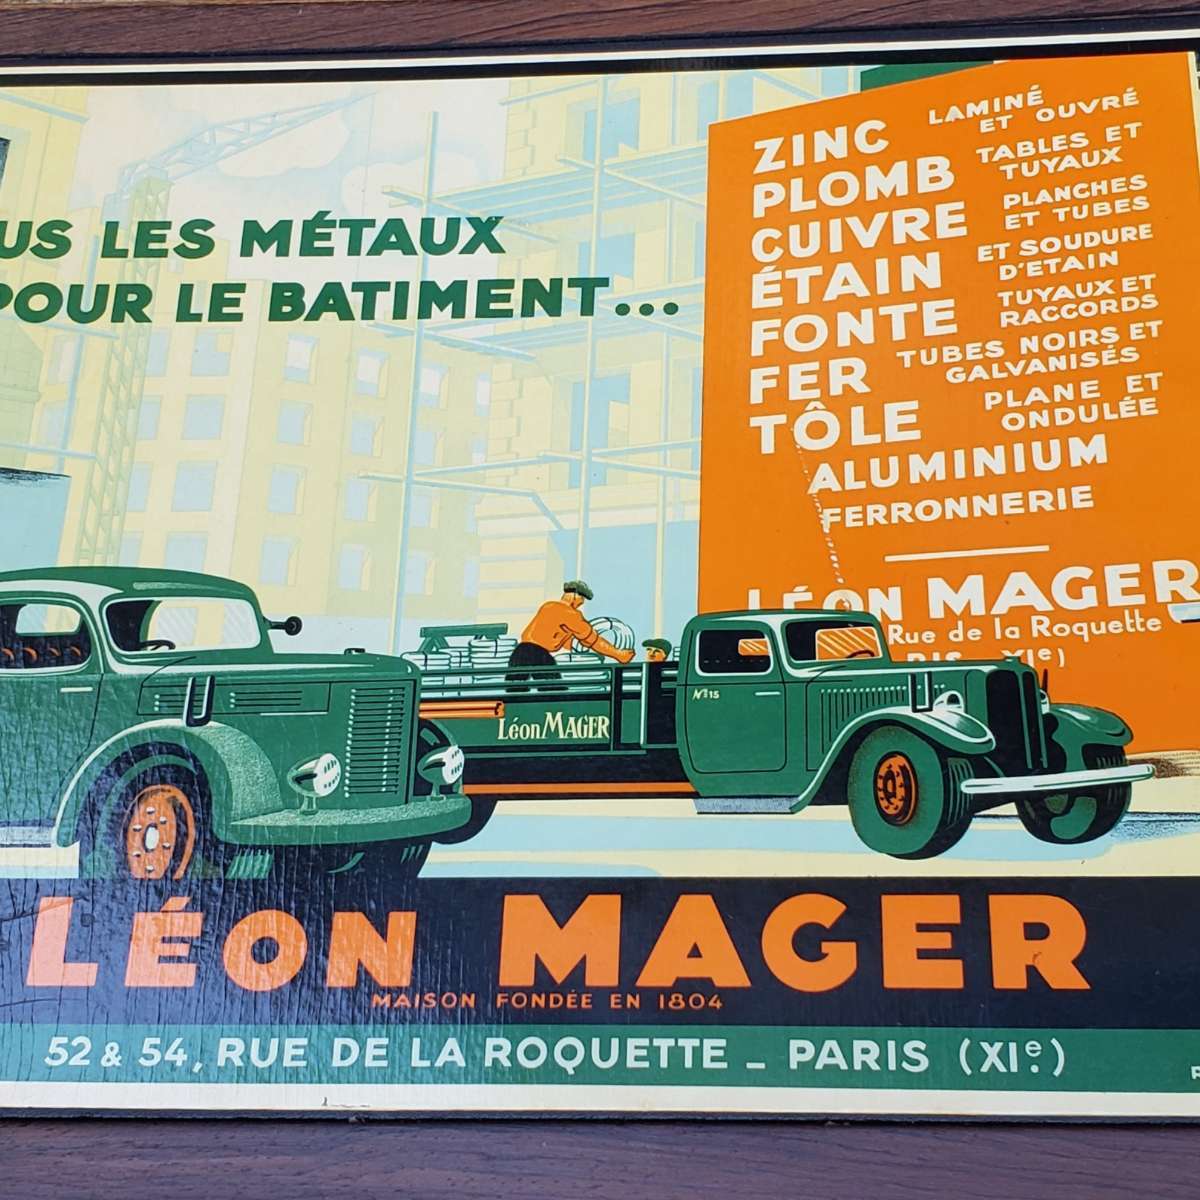 Grand sous main Léon MAGER